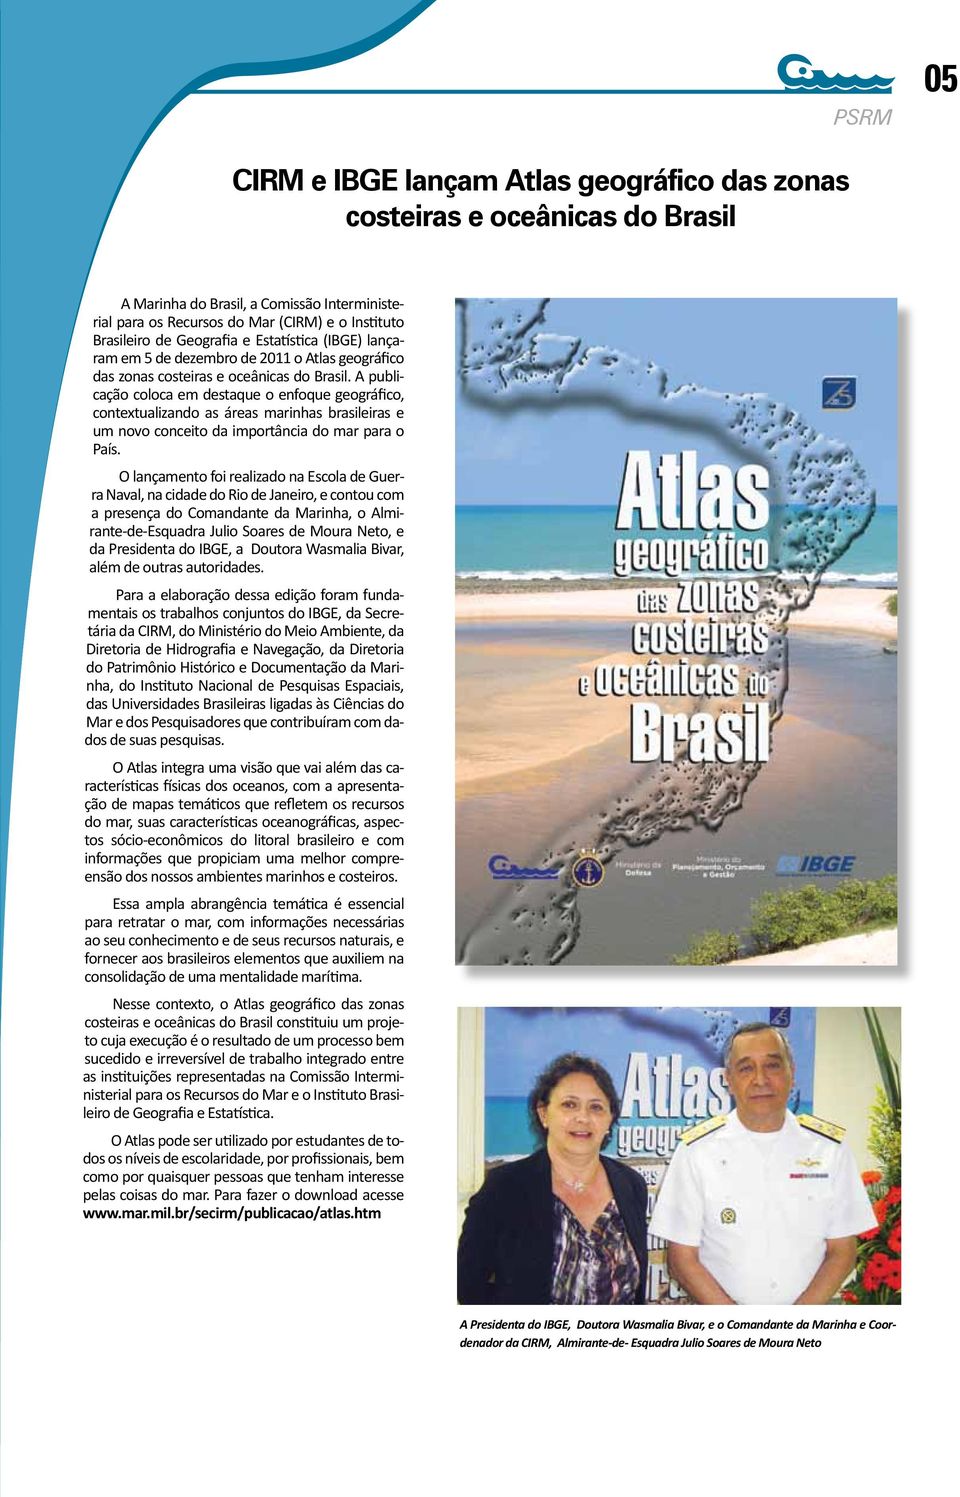 A publicação coloca em destaque o enfoque geográfico, contextualizando as áreas marinhas brasileiras e um novo conceito da importância do mar para o País.